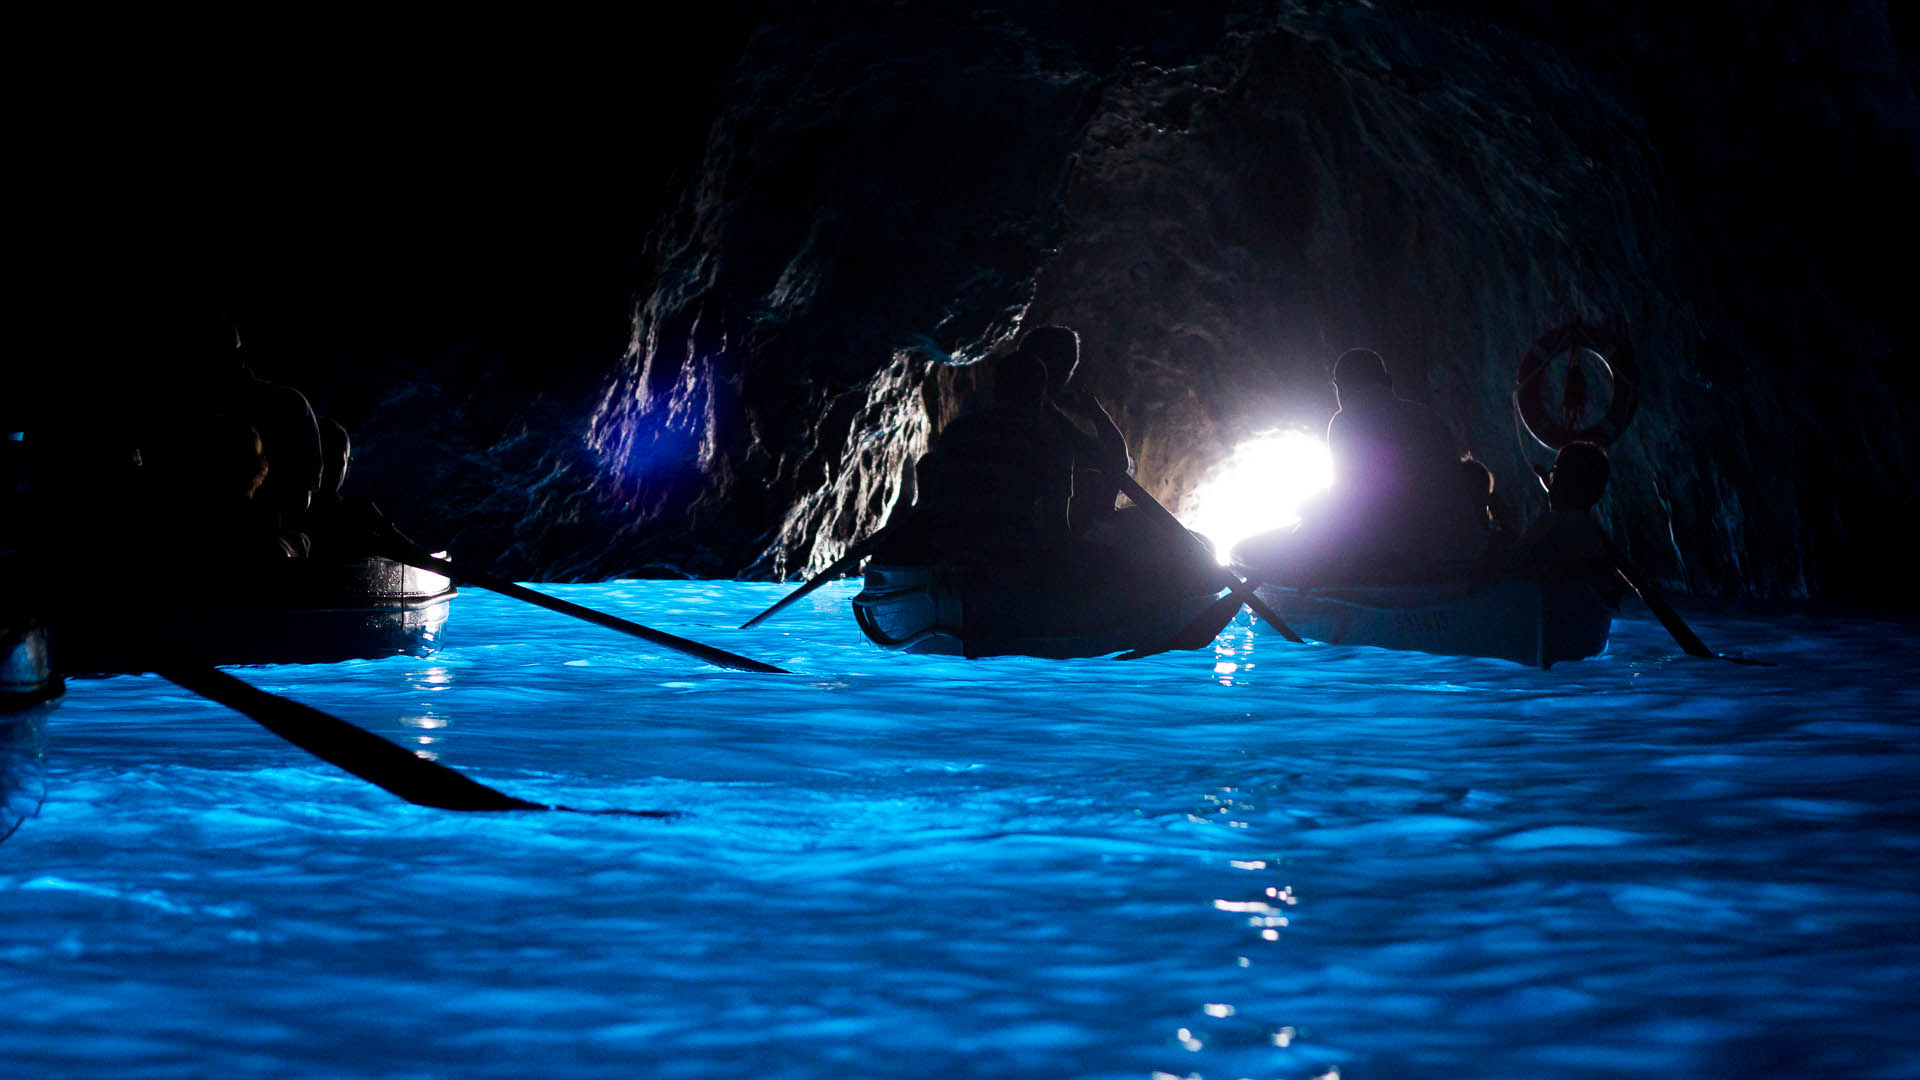 Mlue Grotto – Capri, Italy